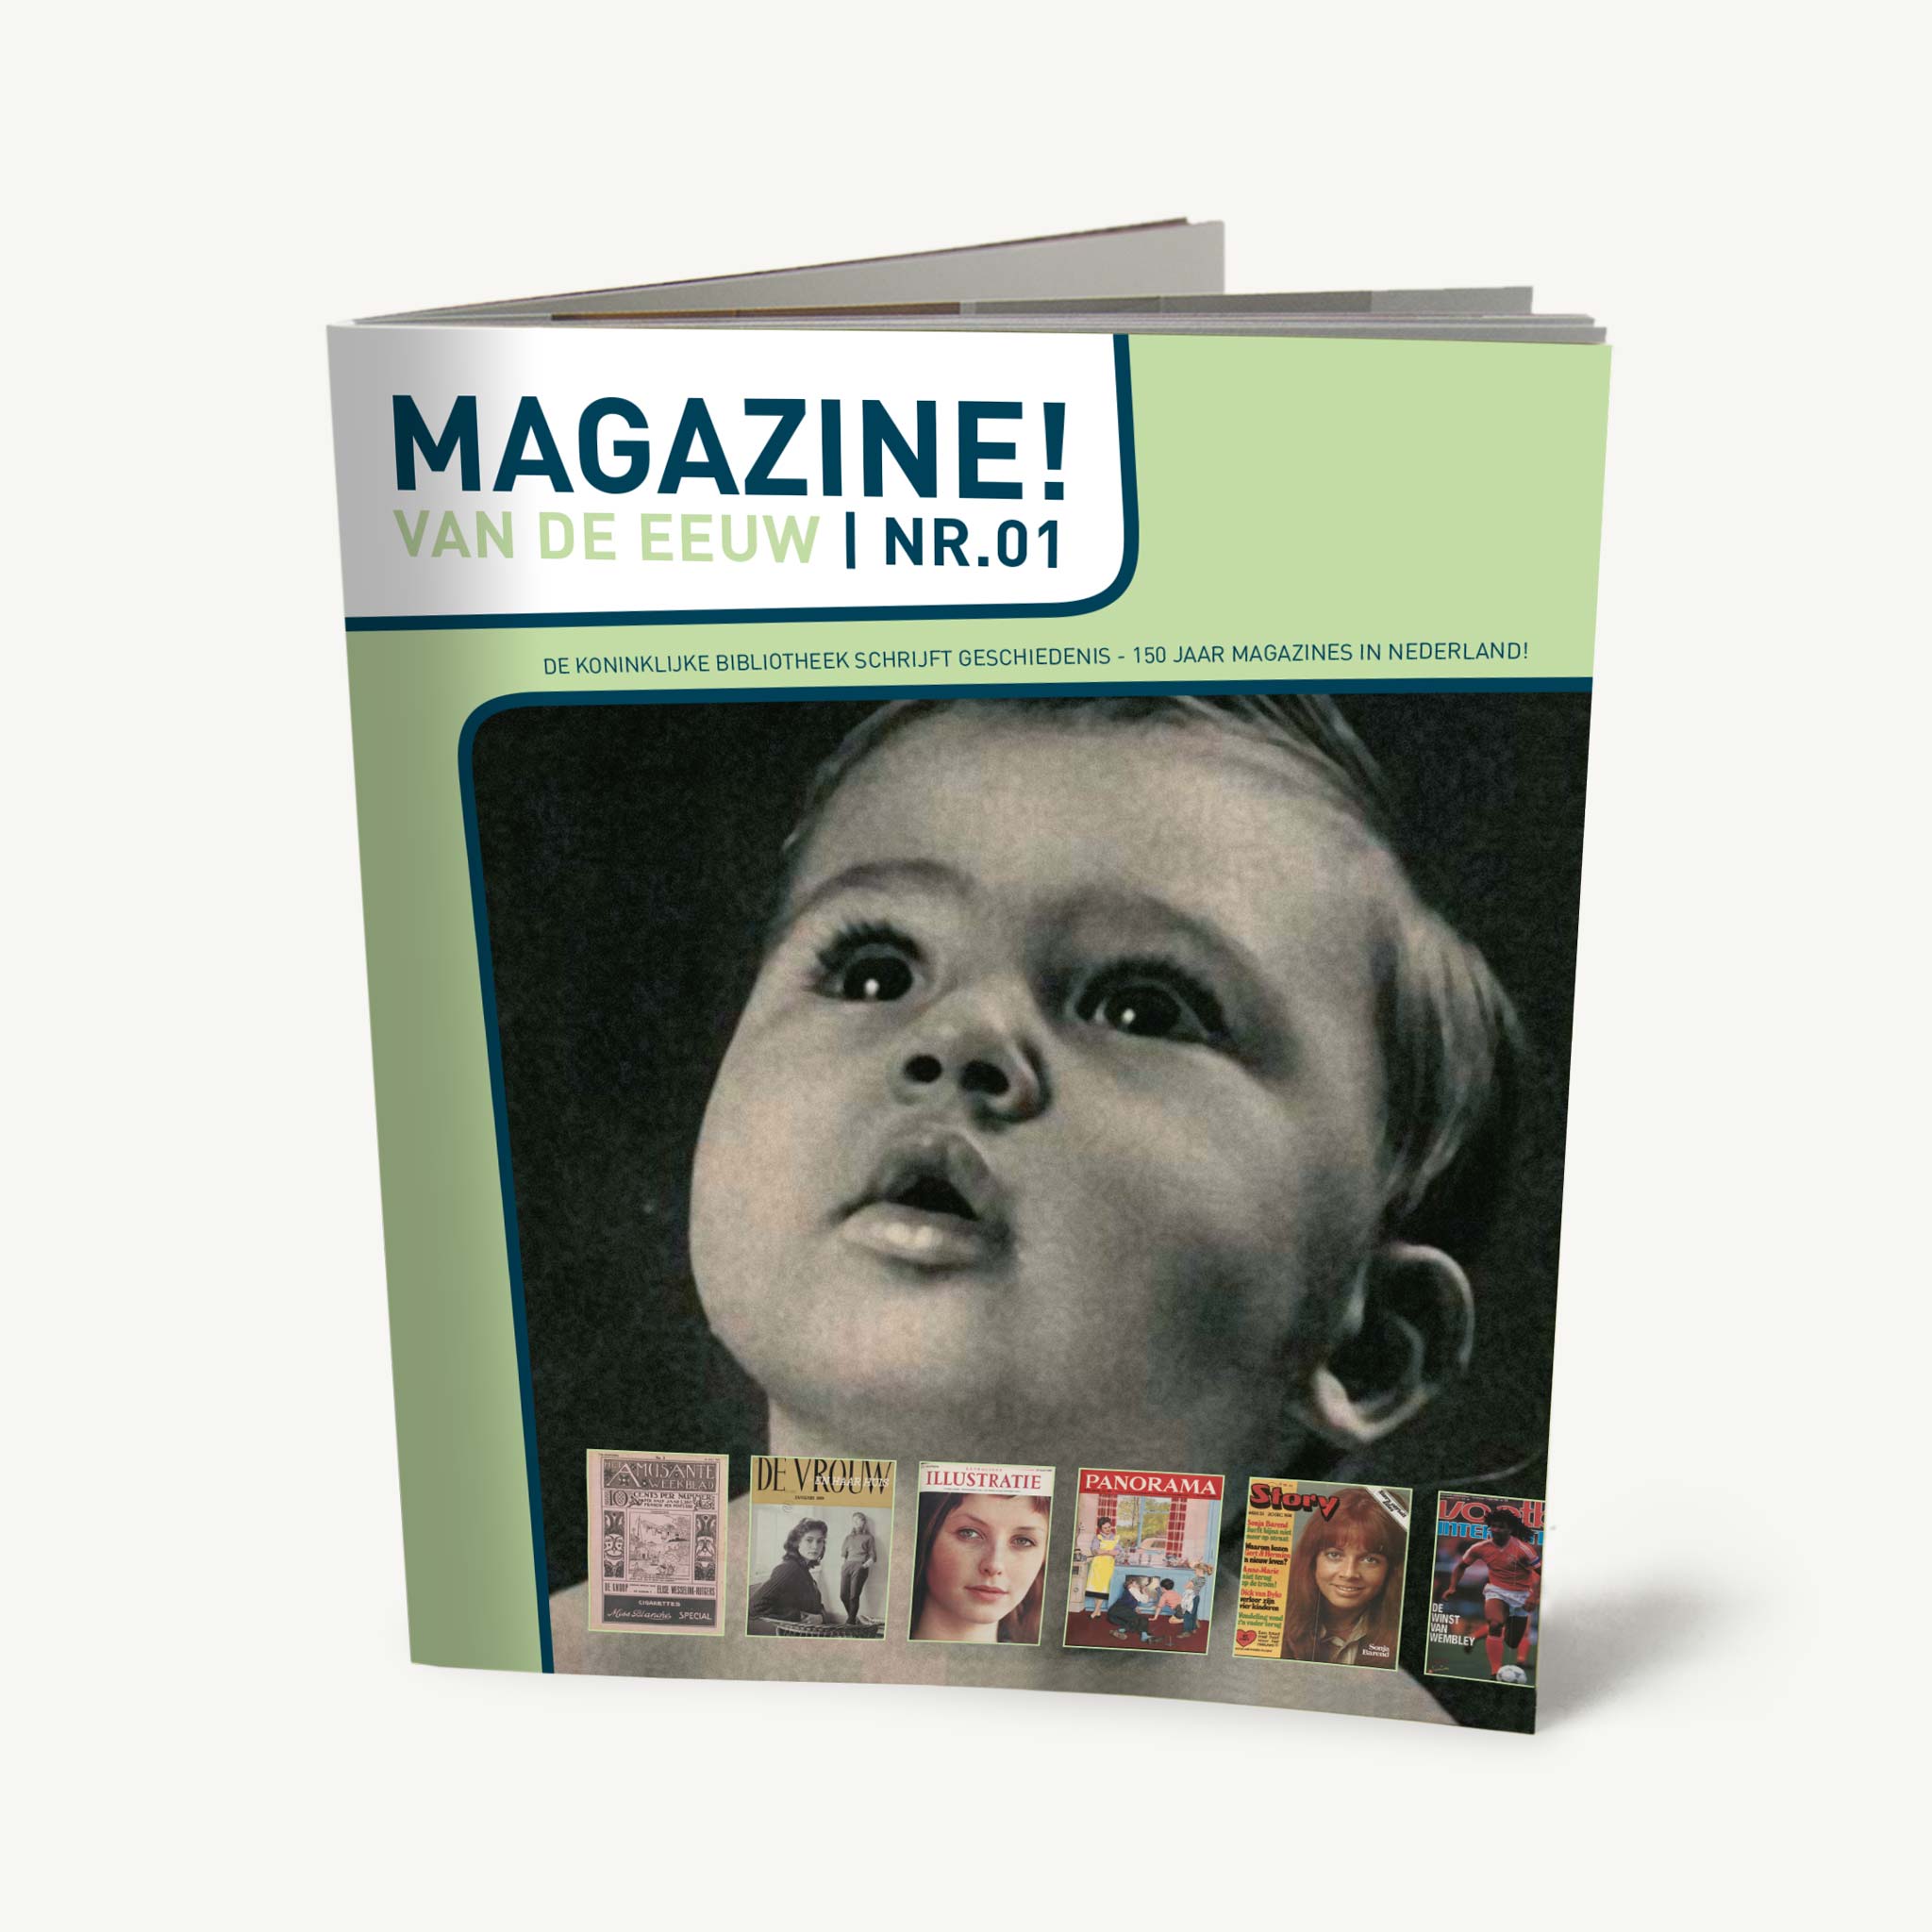 Magazine! van de eeuw